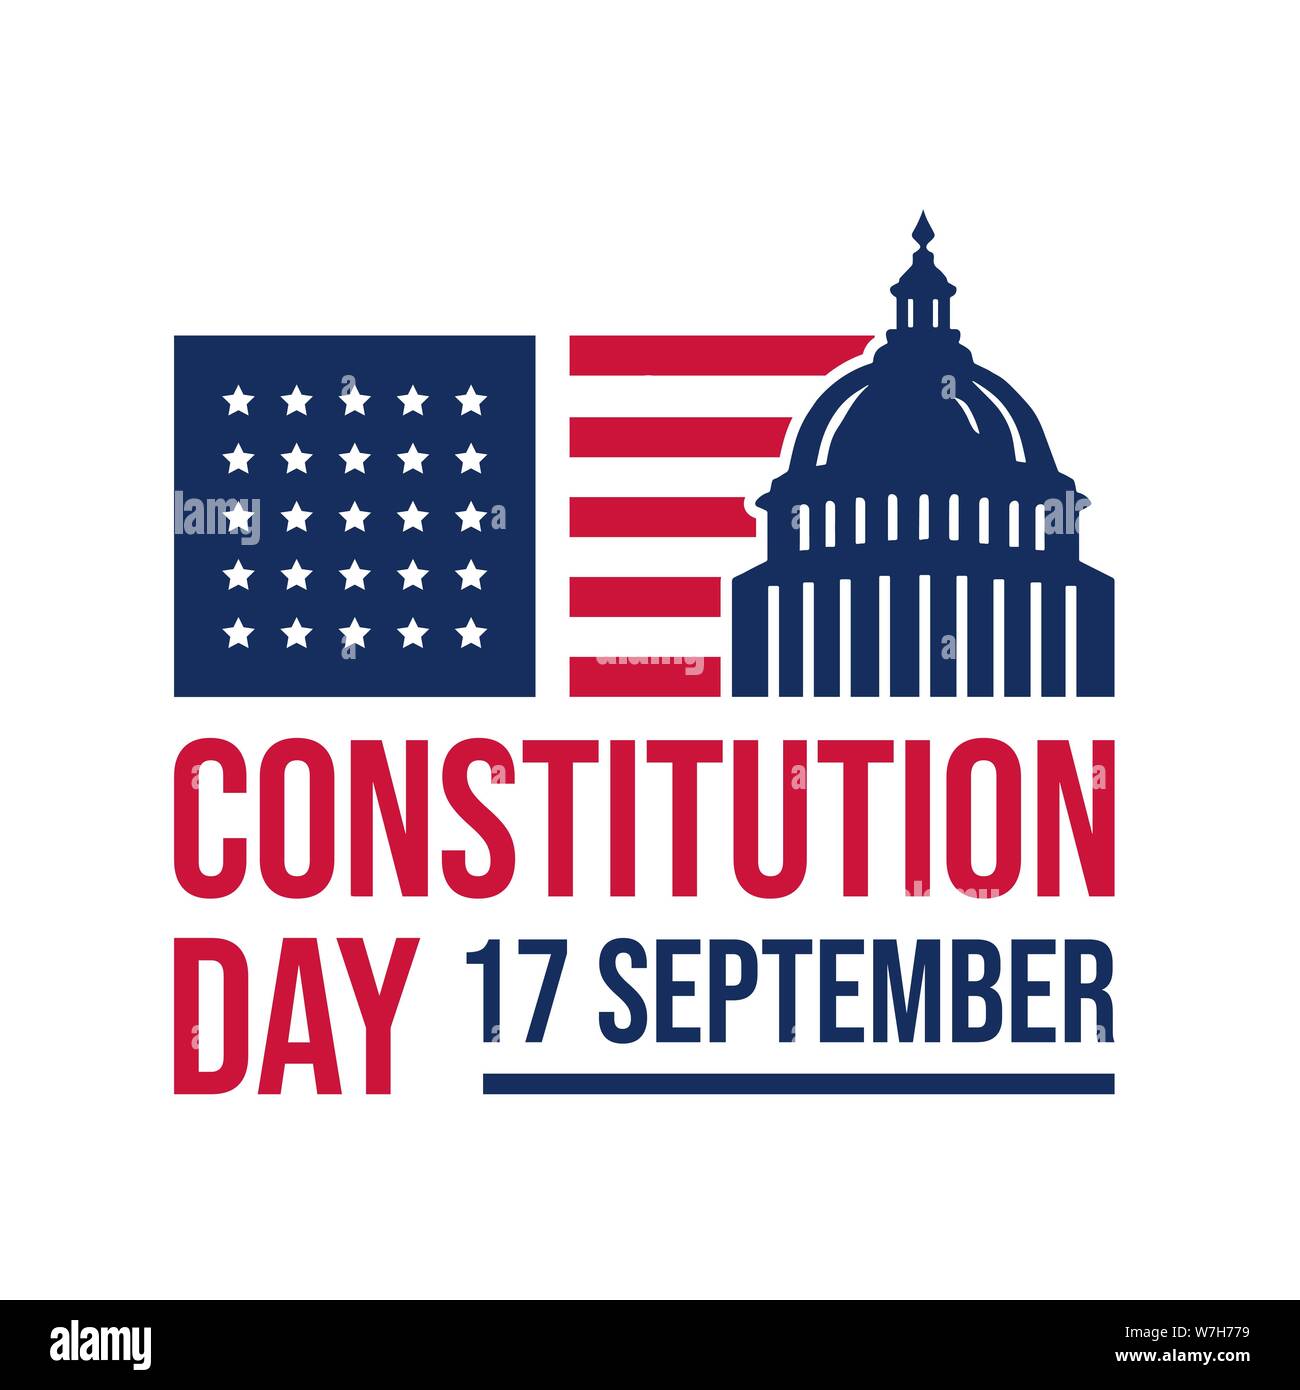 Amerikanische Verfassung Tag nationalen Tag der Amerika logo badge Vektor auf weißem Hintergrund Stock Vektor